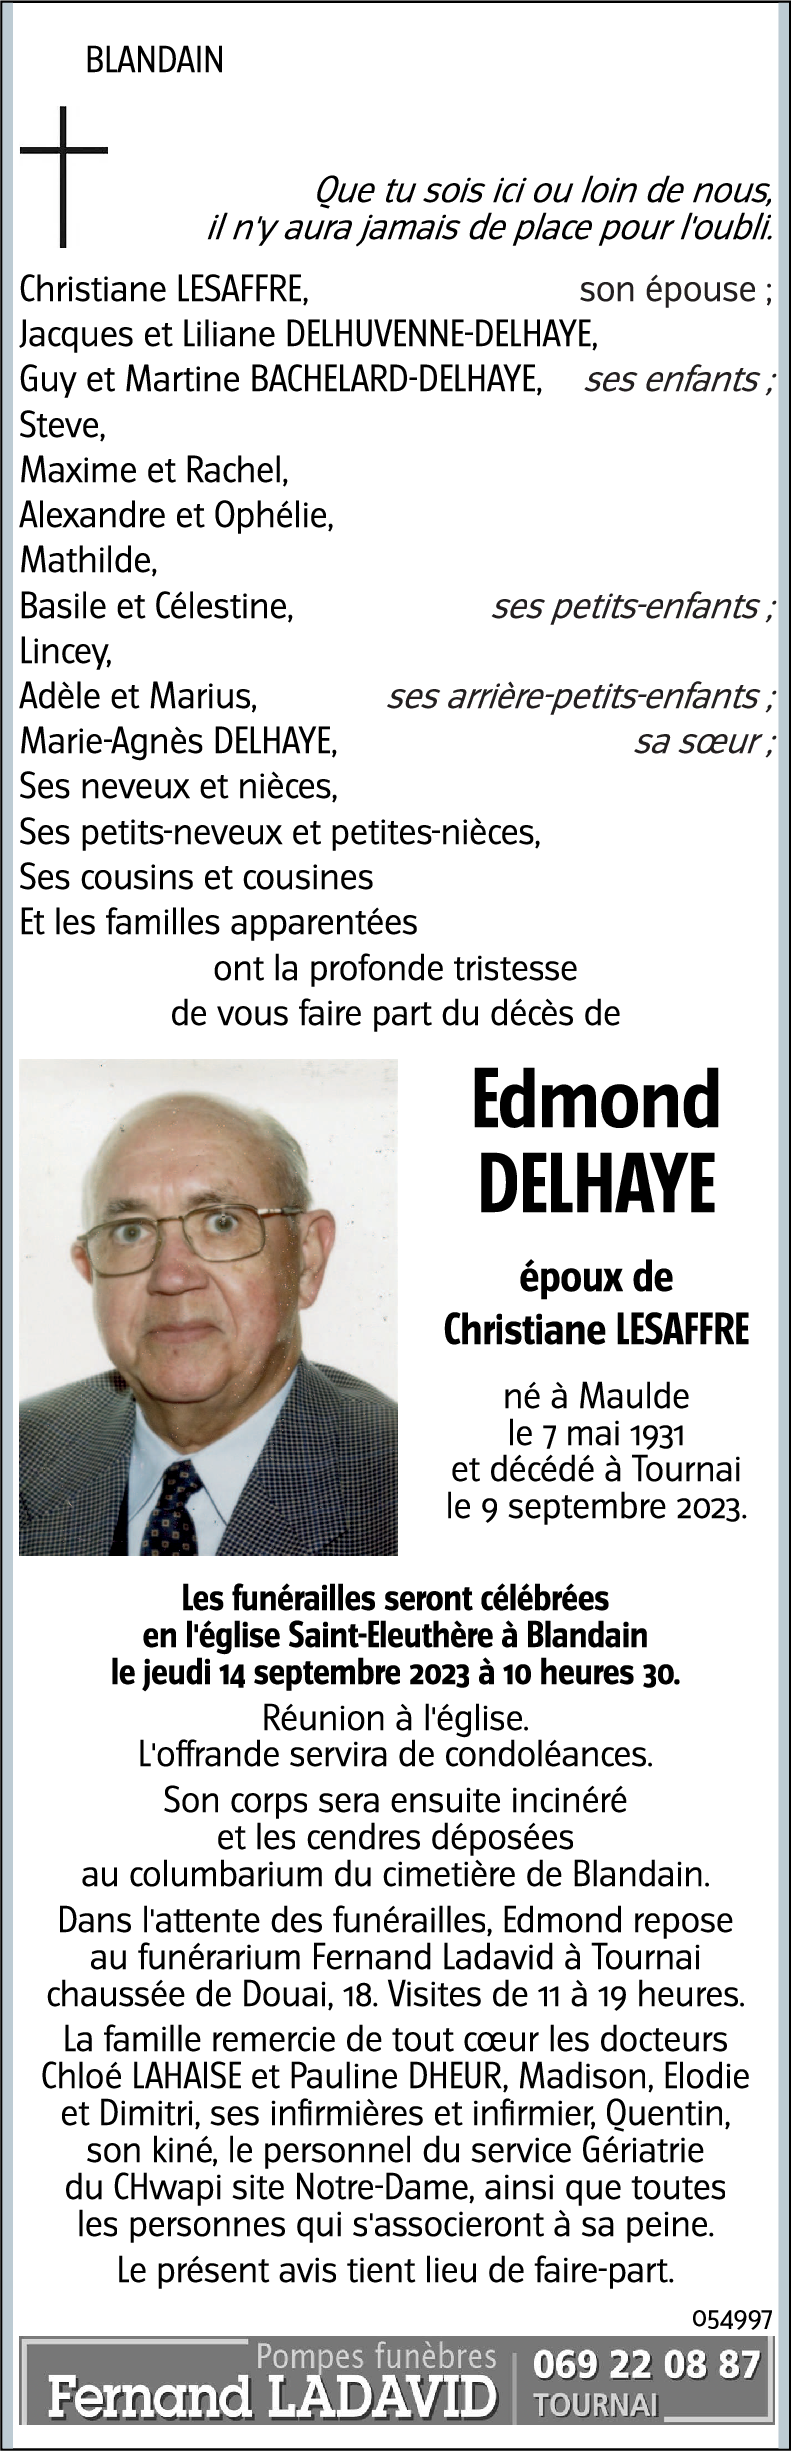 Edmond DELHAYE